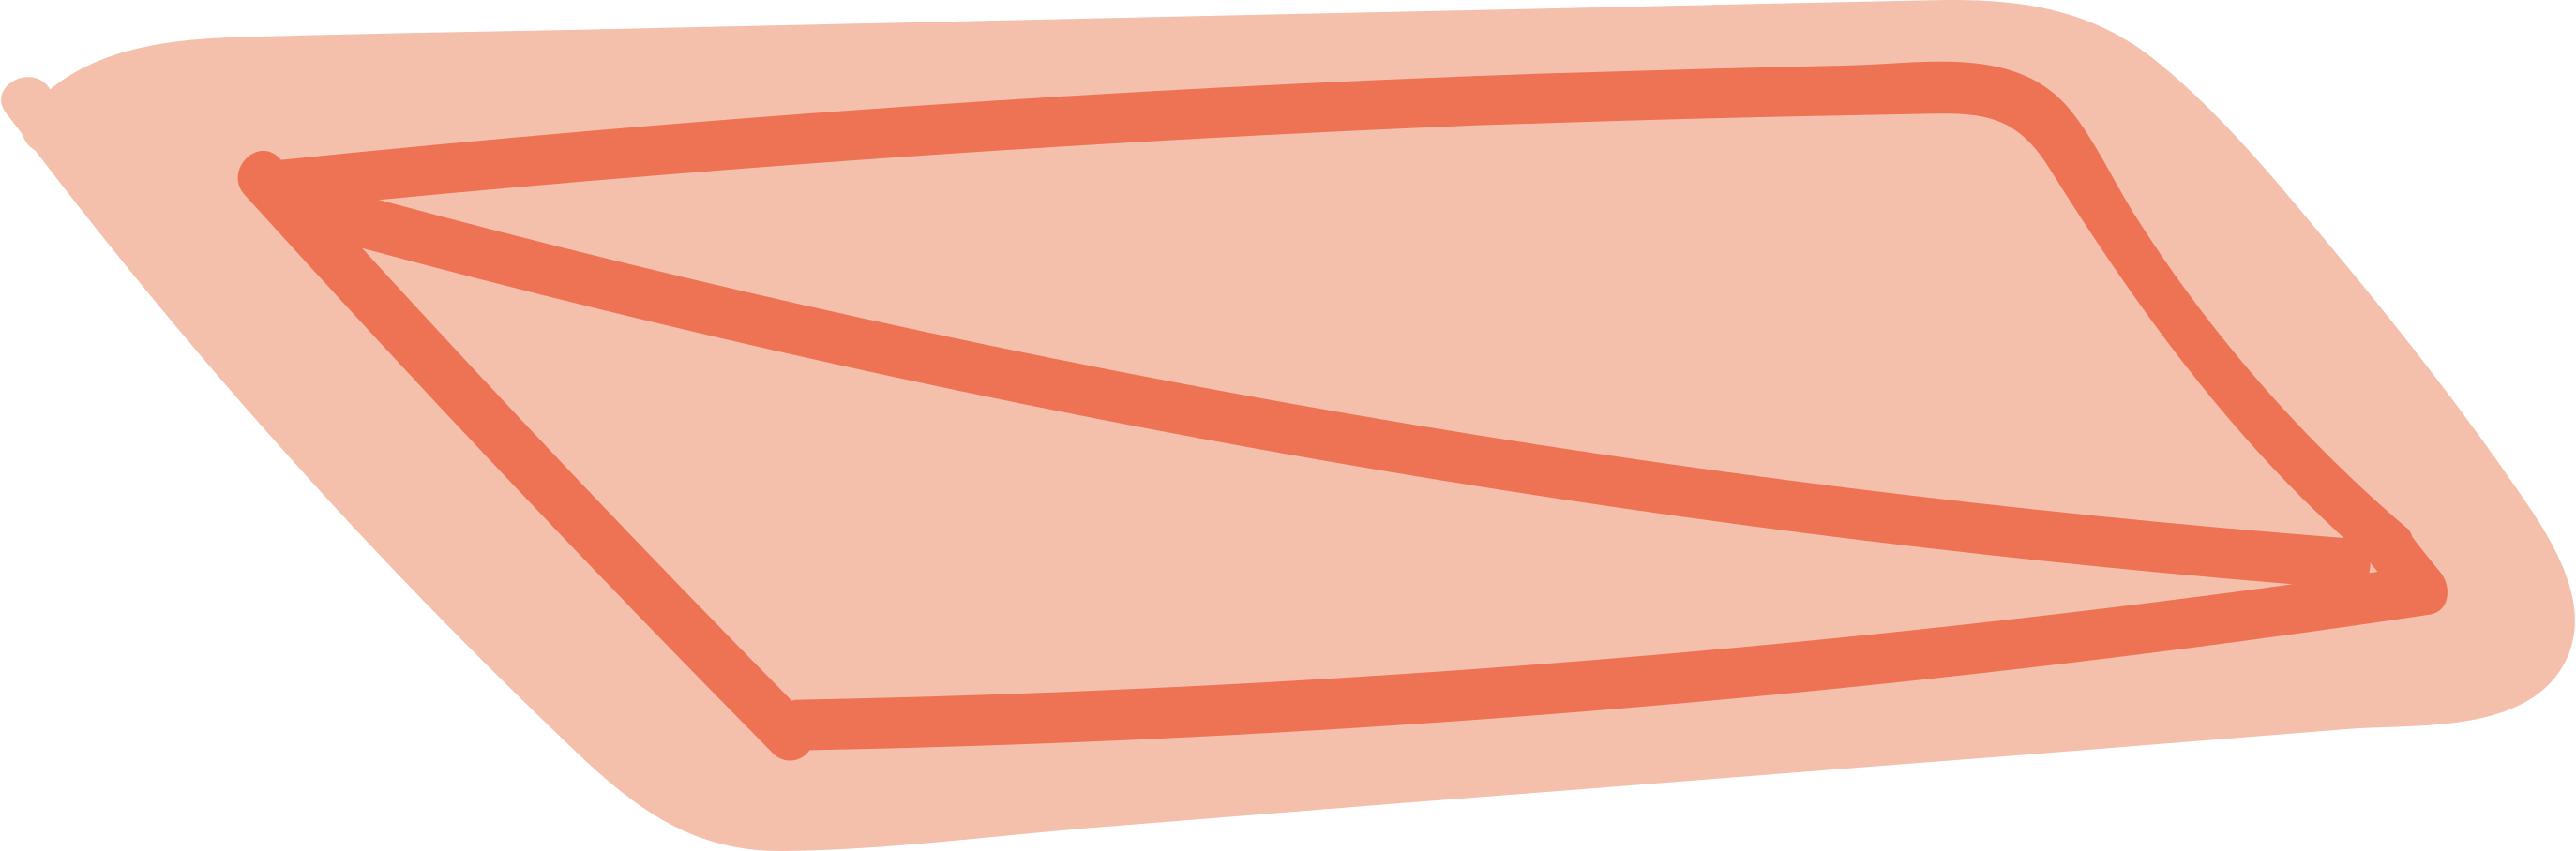 mat Illustration in PNG, SVG